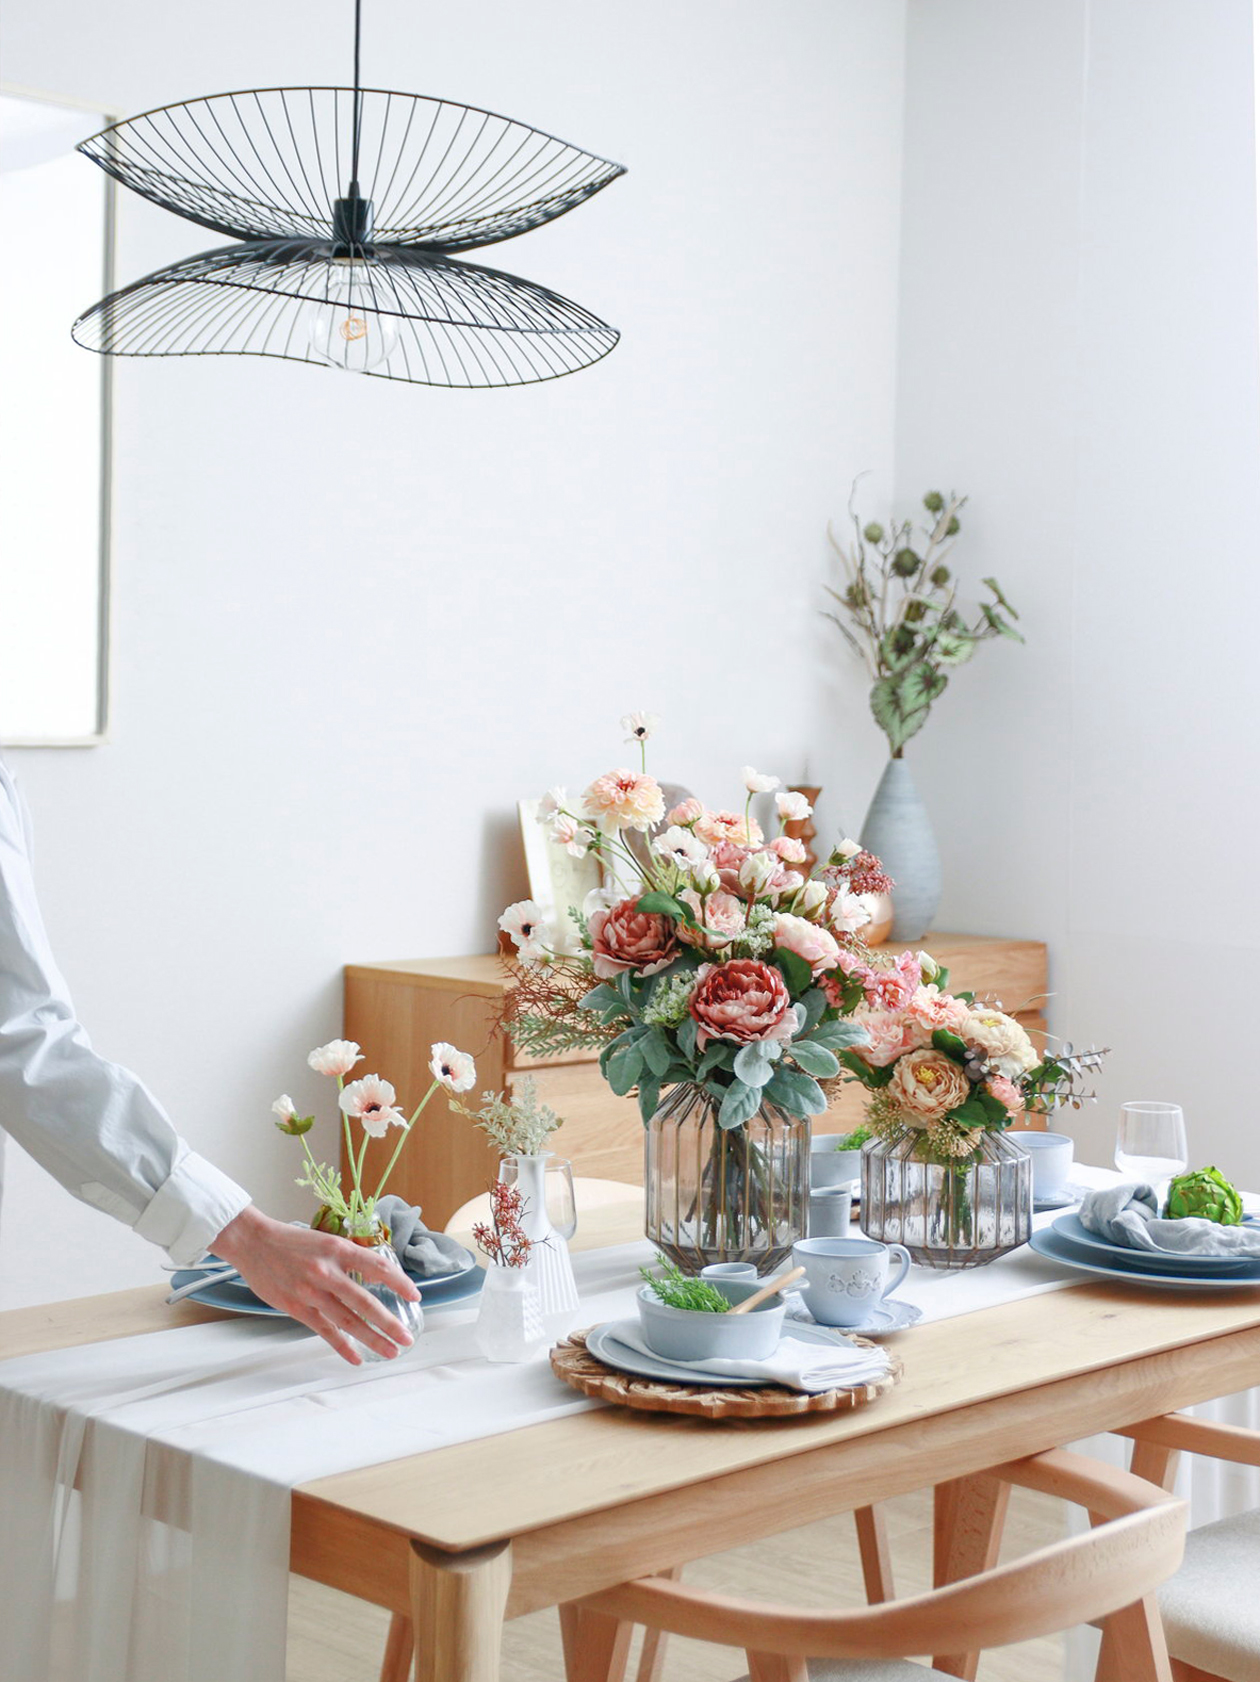 朝の食卓に造花とフェイクグリーンを飾ったイメージ。自然な木製のテーブル・椅子のセット、テーブルセンターの上に花瓶と精巧な造花の束。